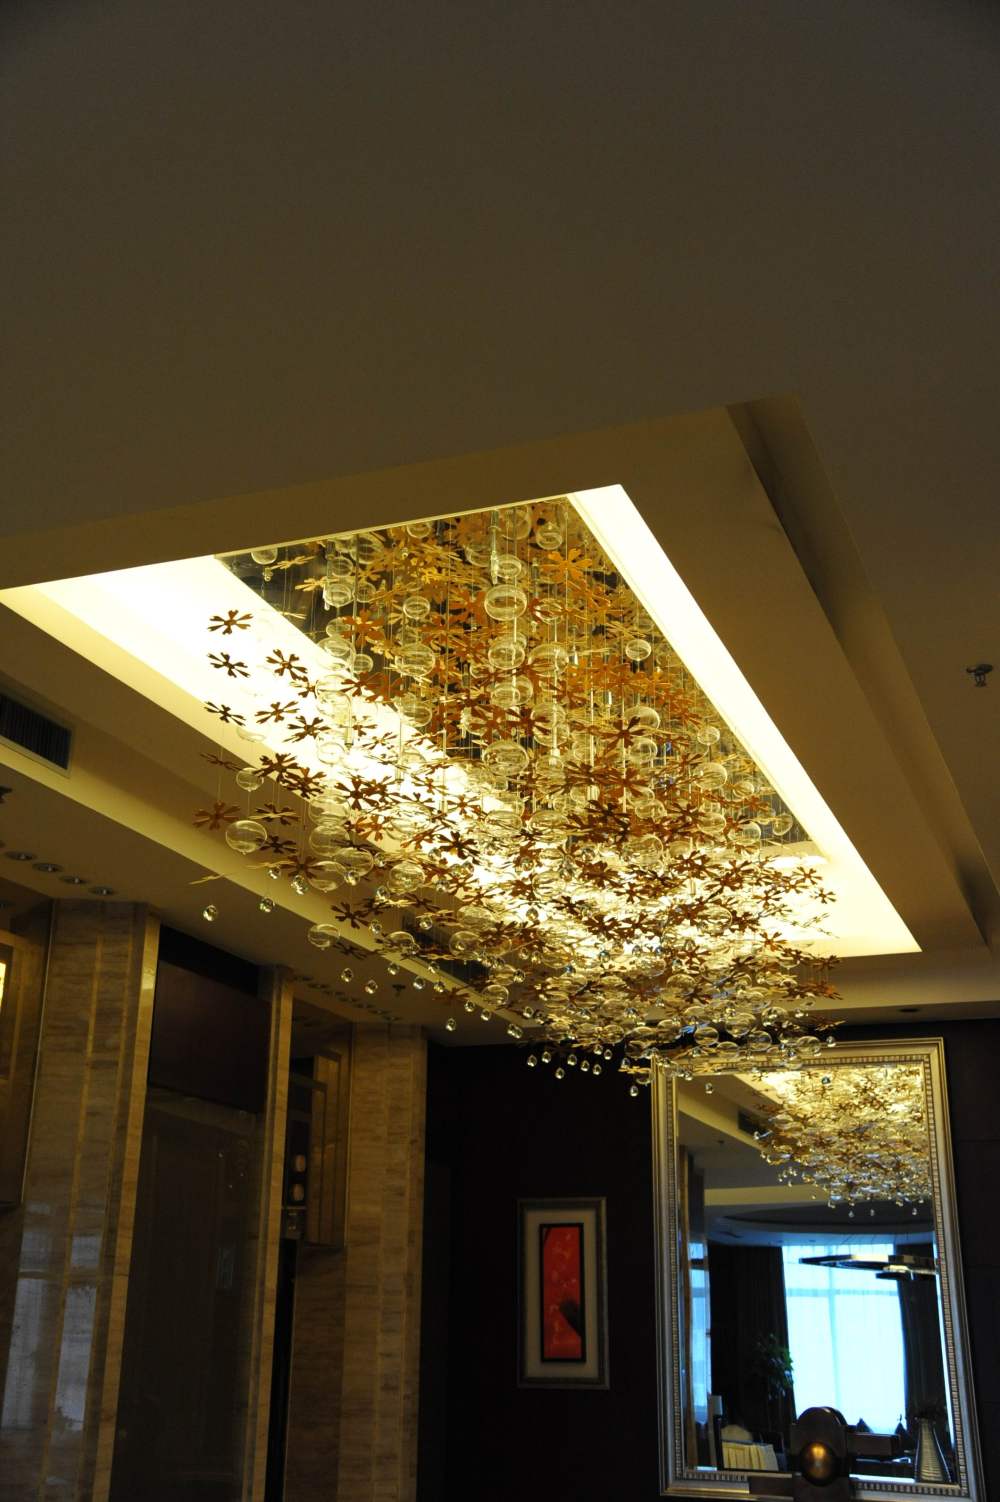 兰州雷迪森大酒店(Lanzhou Leidisen Hotel)_DSC_8374.JPG